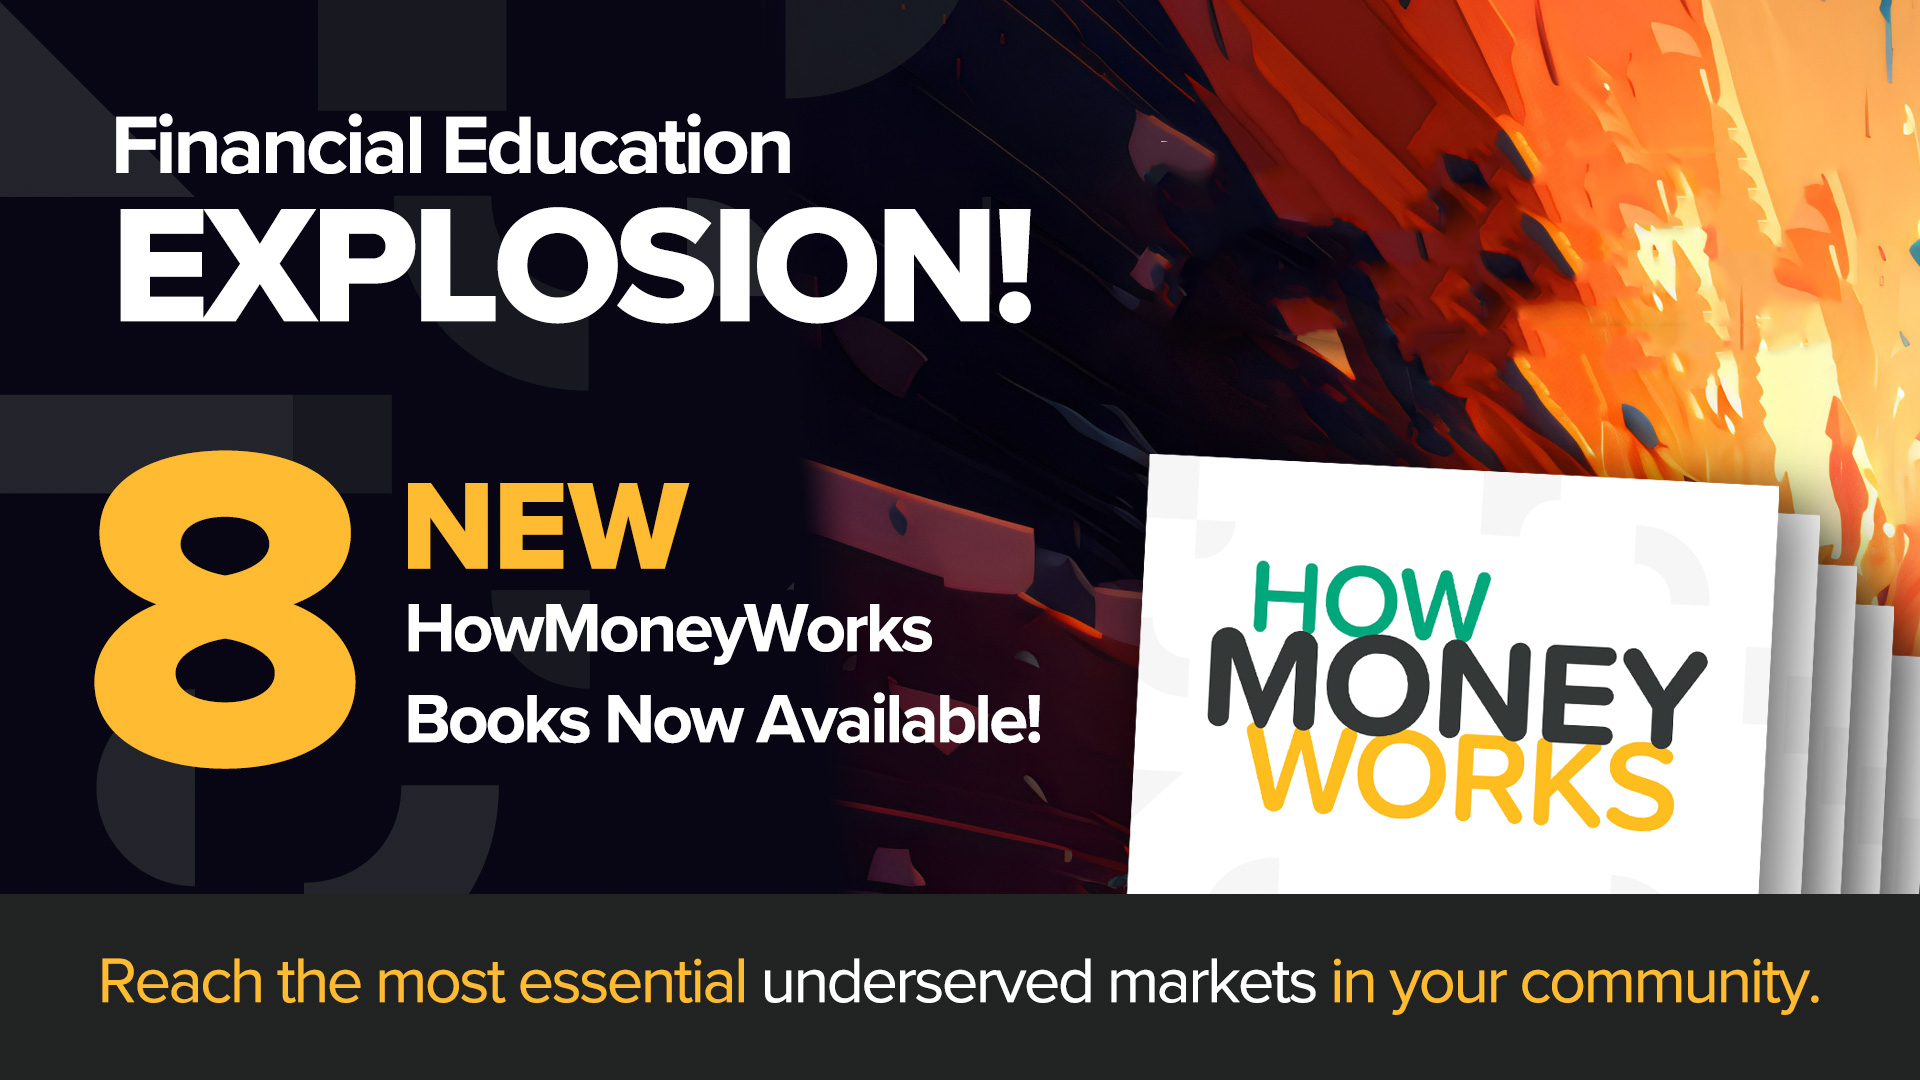 8 Bagong HowMoneyWorks Books—Ngayon Namin ang Magpakita ng Sari-saring Bagong Lineup ng Financial Literacy Books